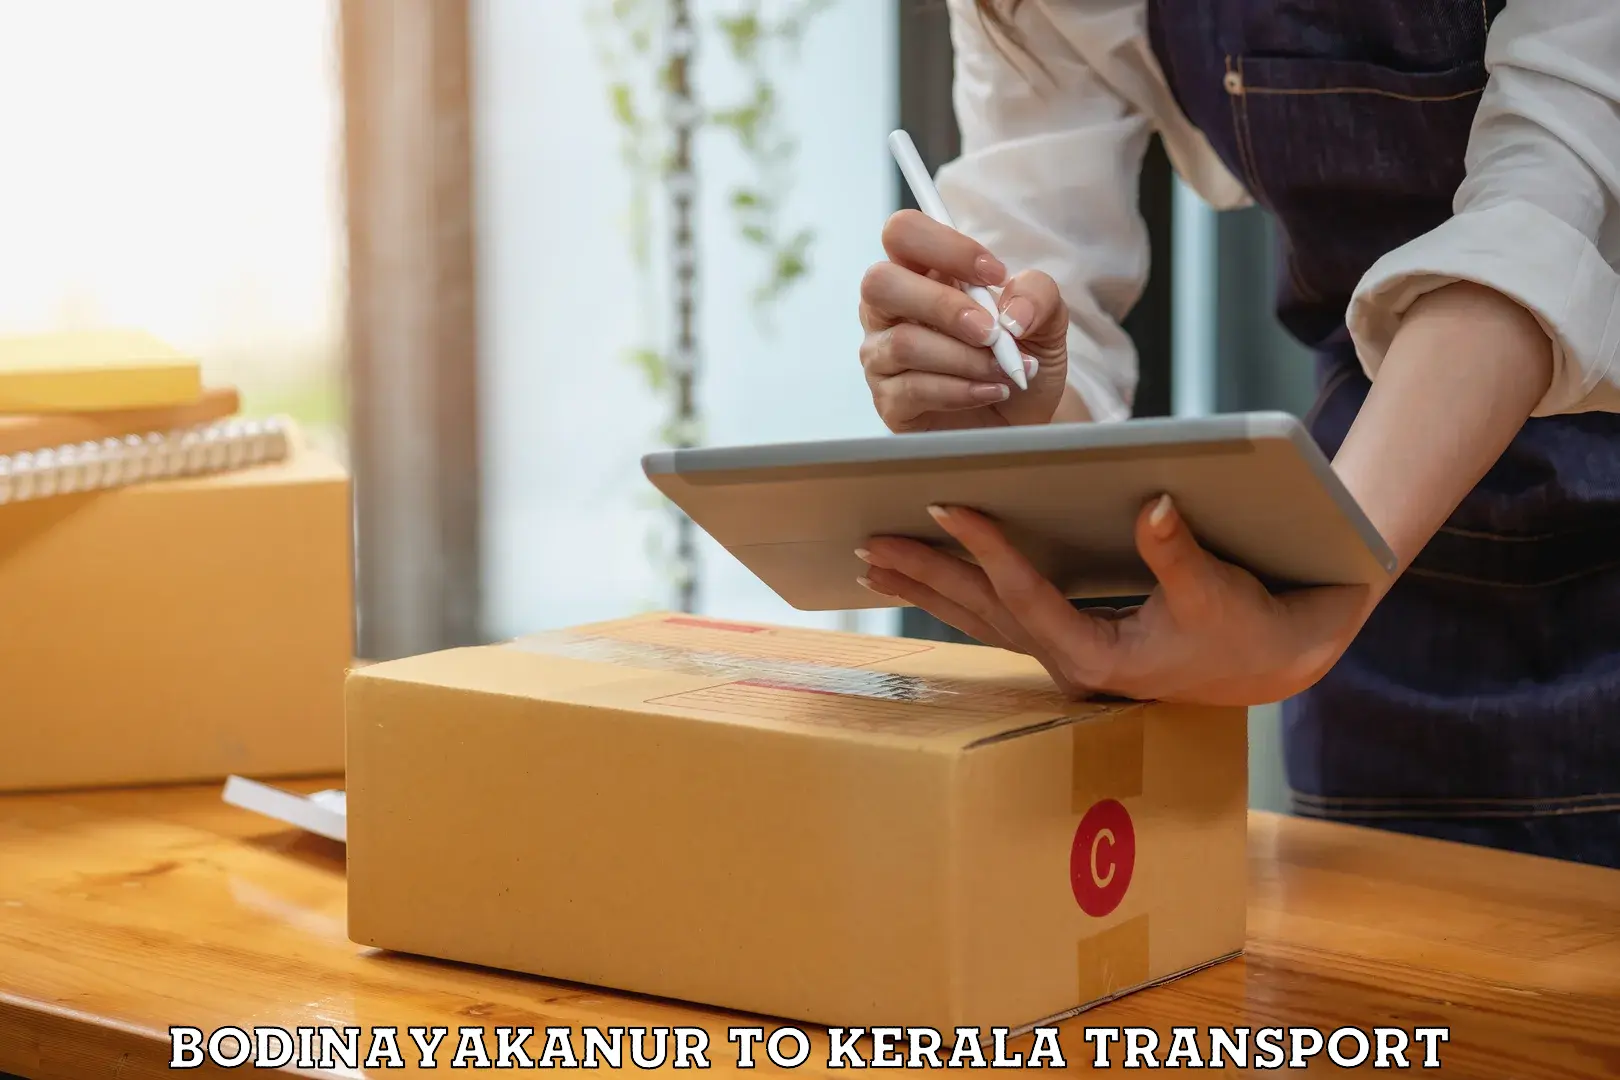 Two wheeler parcel service Bodinayakanur to Ernakulam